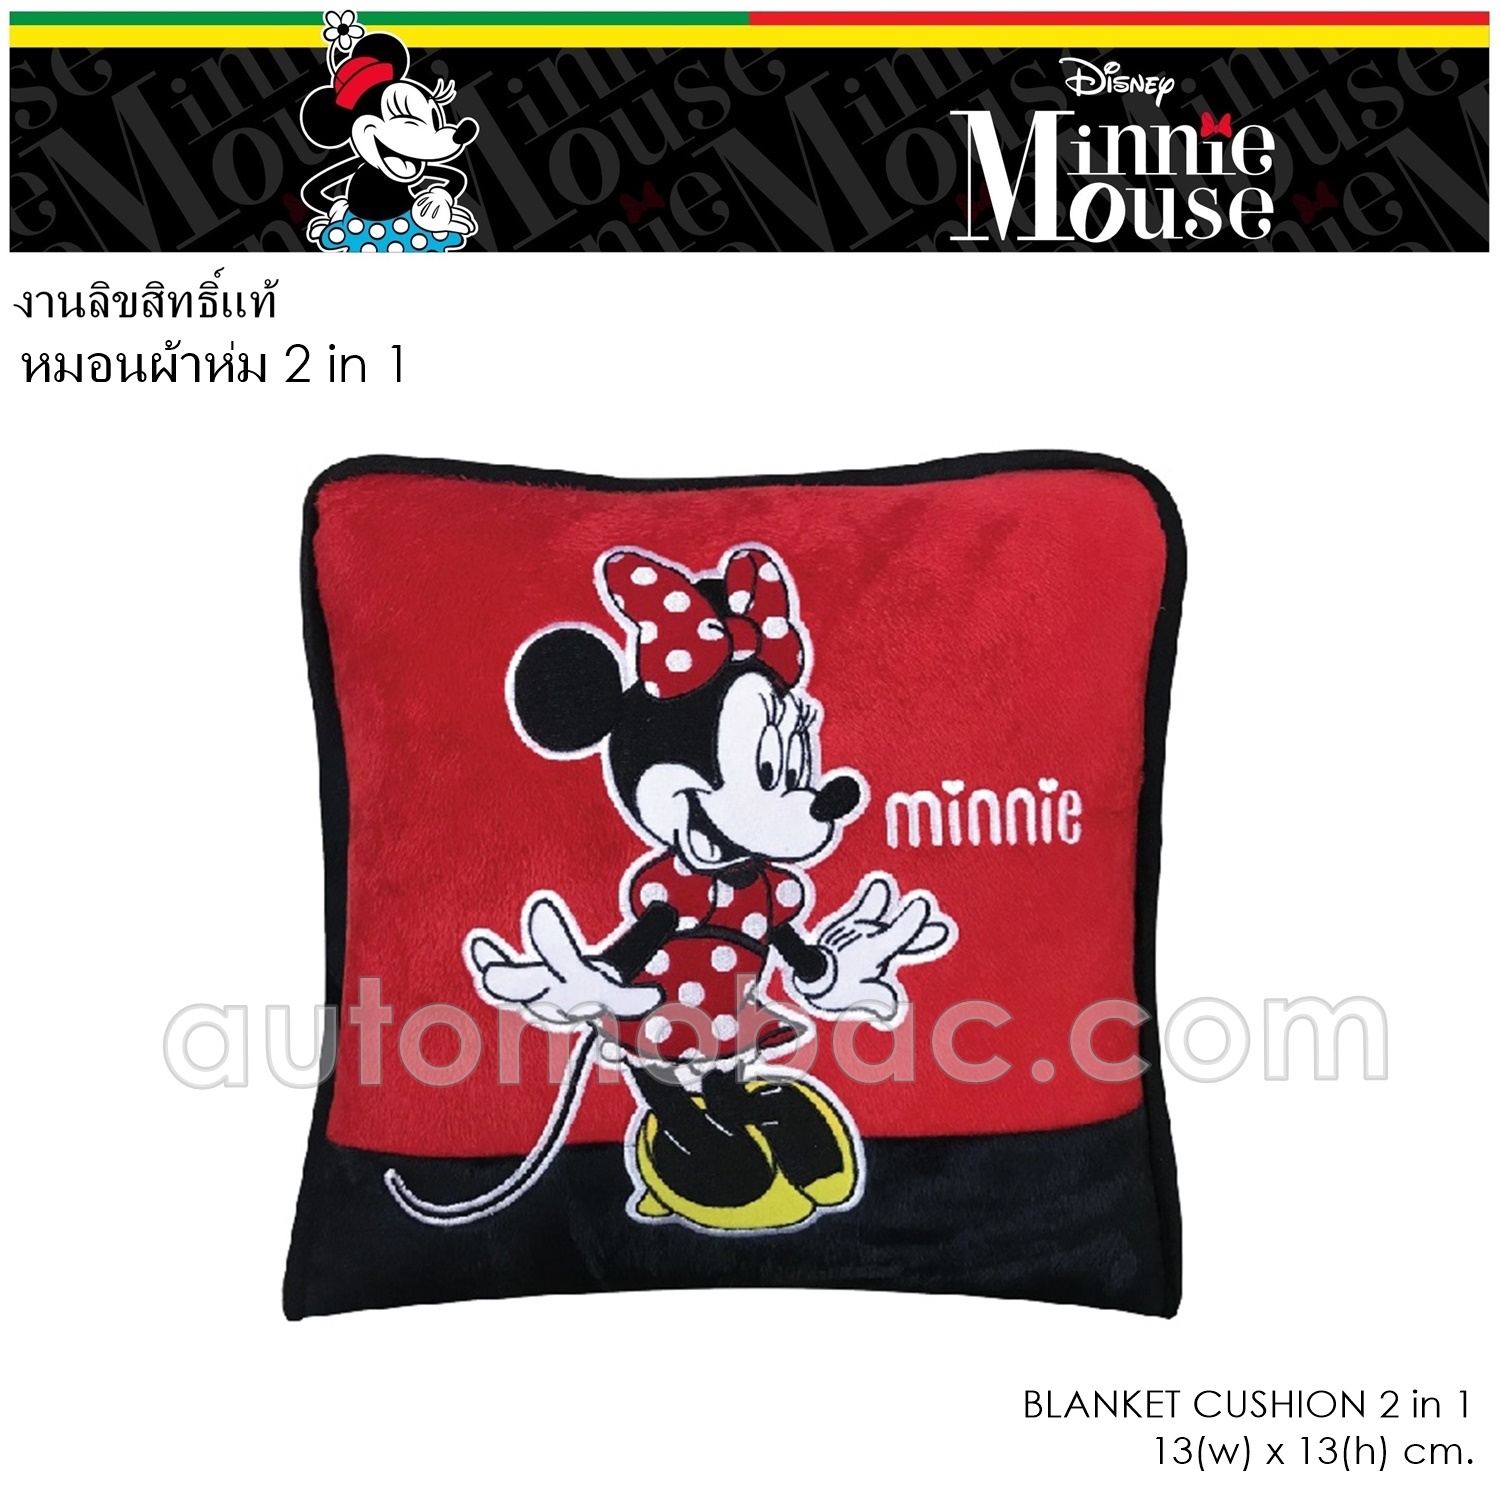 Minnie มินนี่ หมอนผ้าห่ม 2 in 1 เมื่อกางออกมาใช้เป็นผ้าห่มได้ ใช้ได้ทั้งในบ้านและในรถ งานแท้